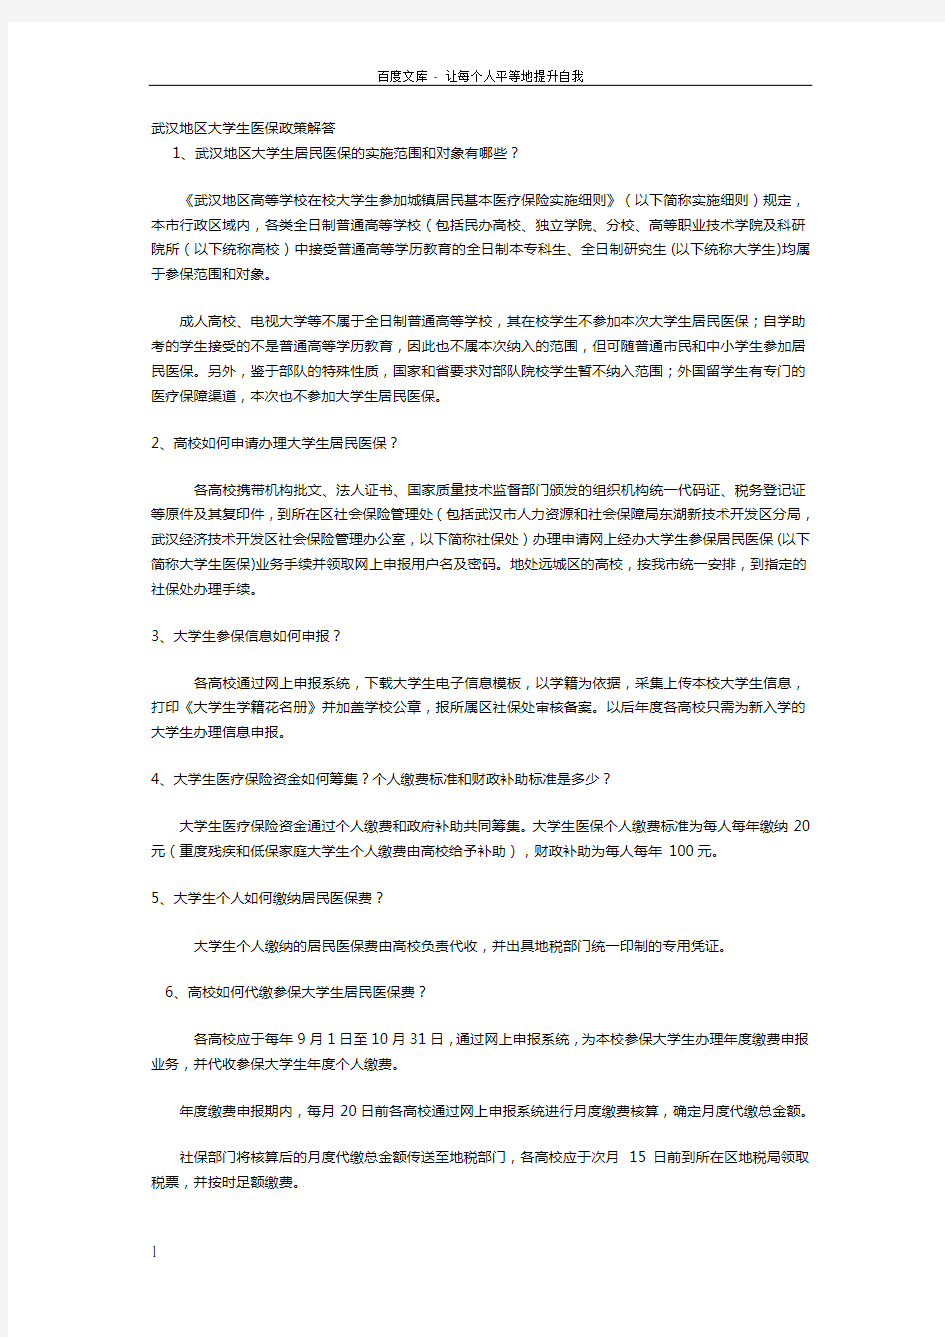 武汉地区大学生医保政策解答